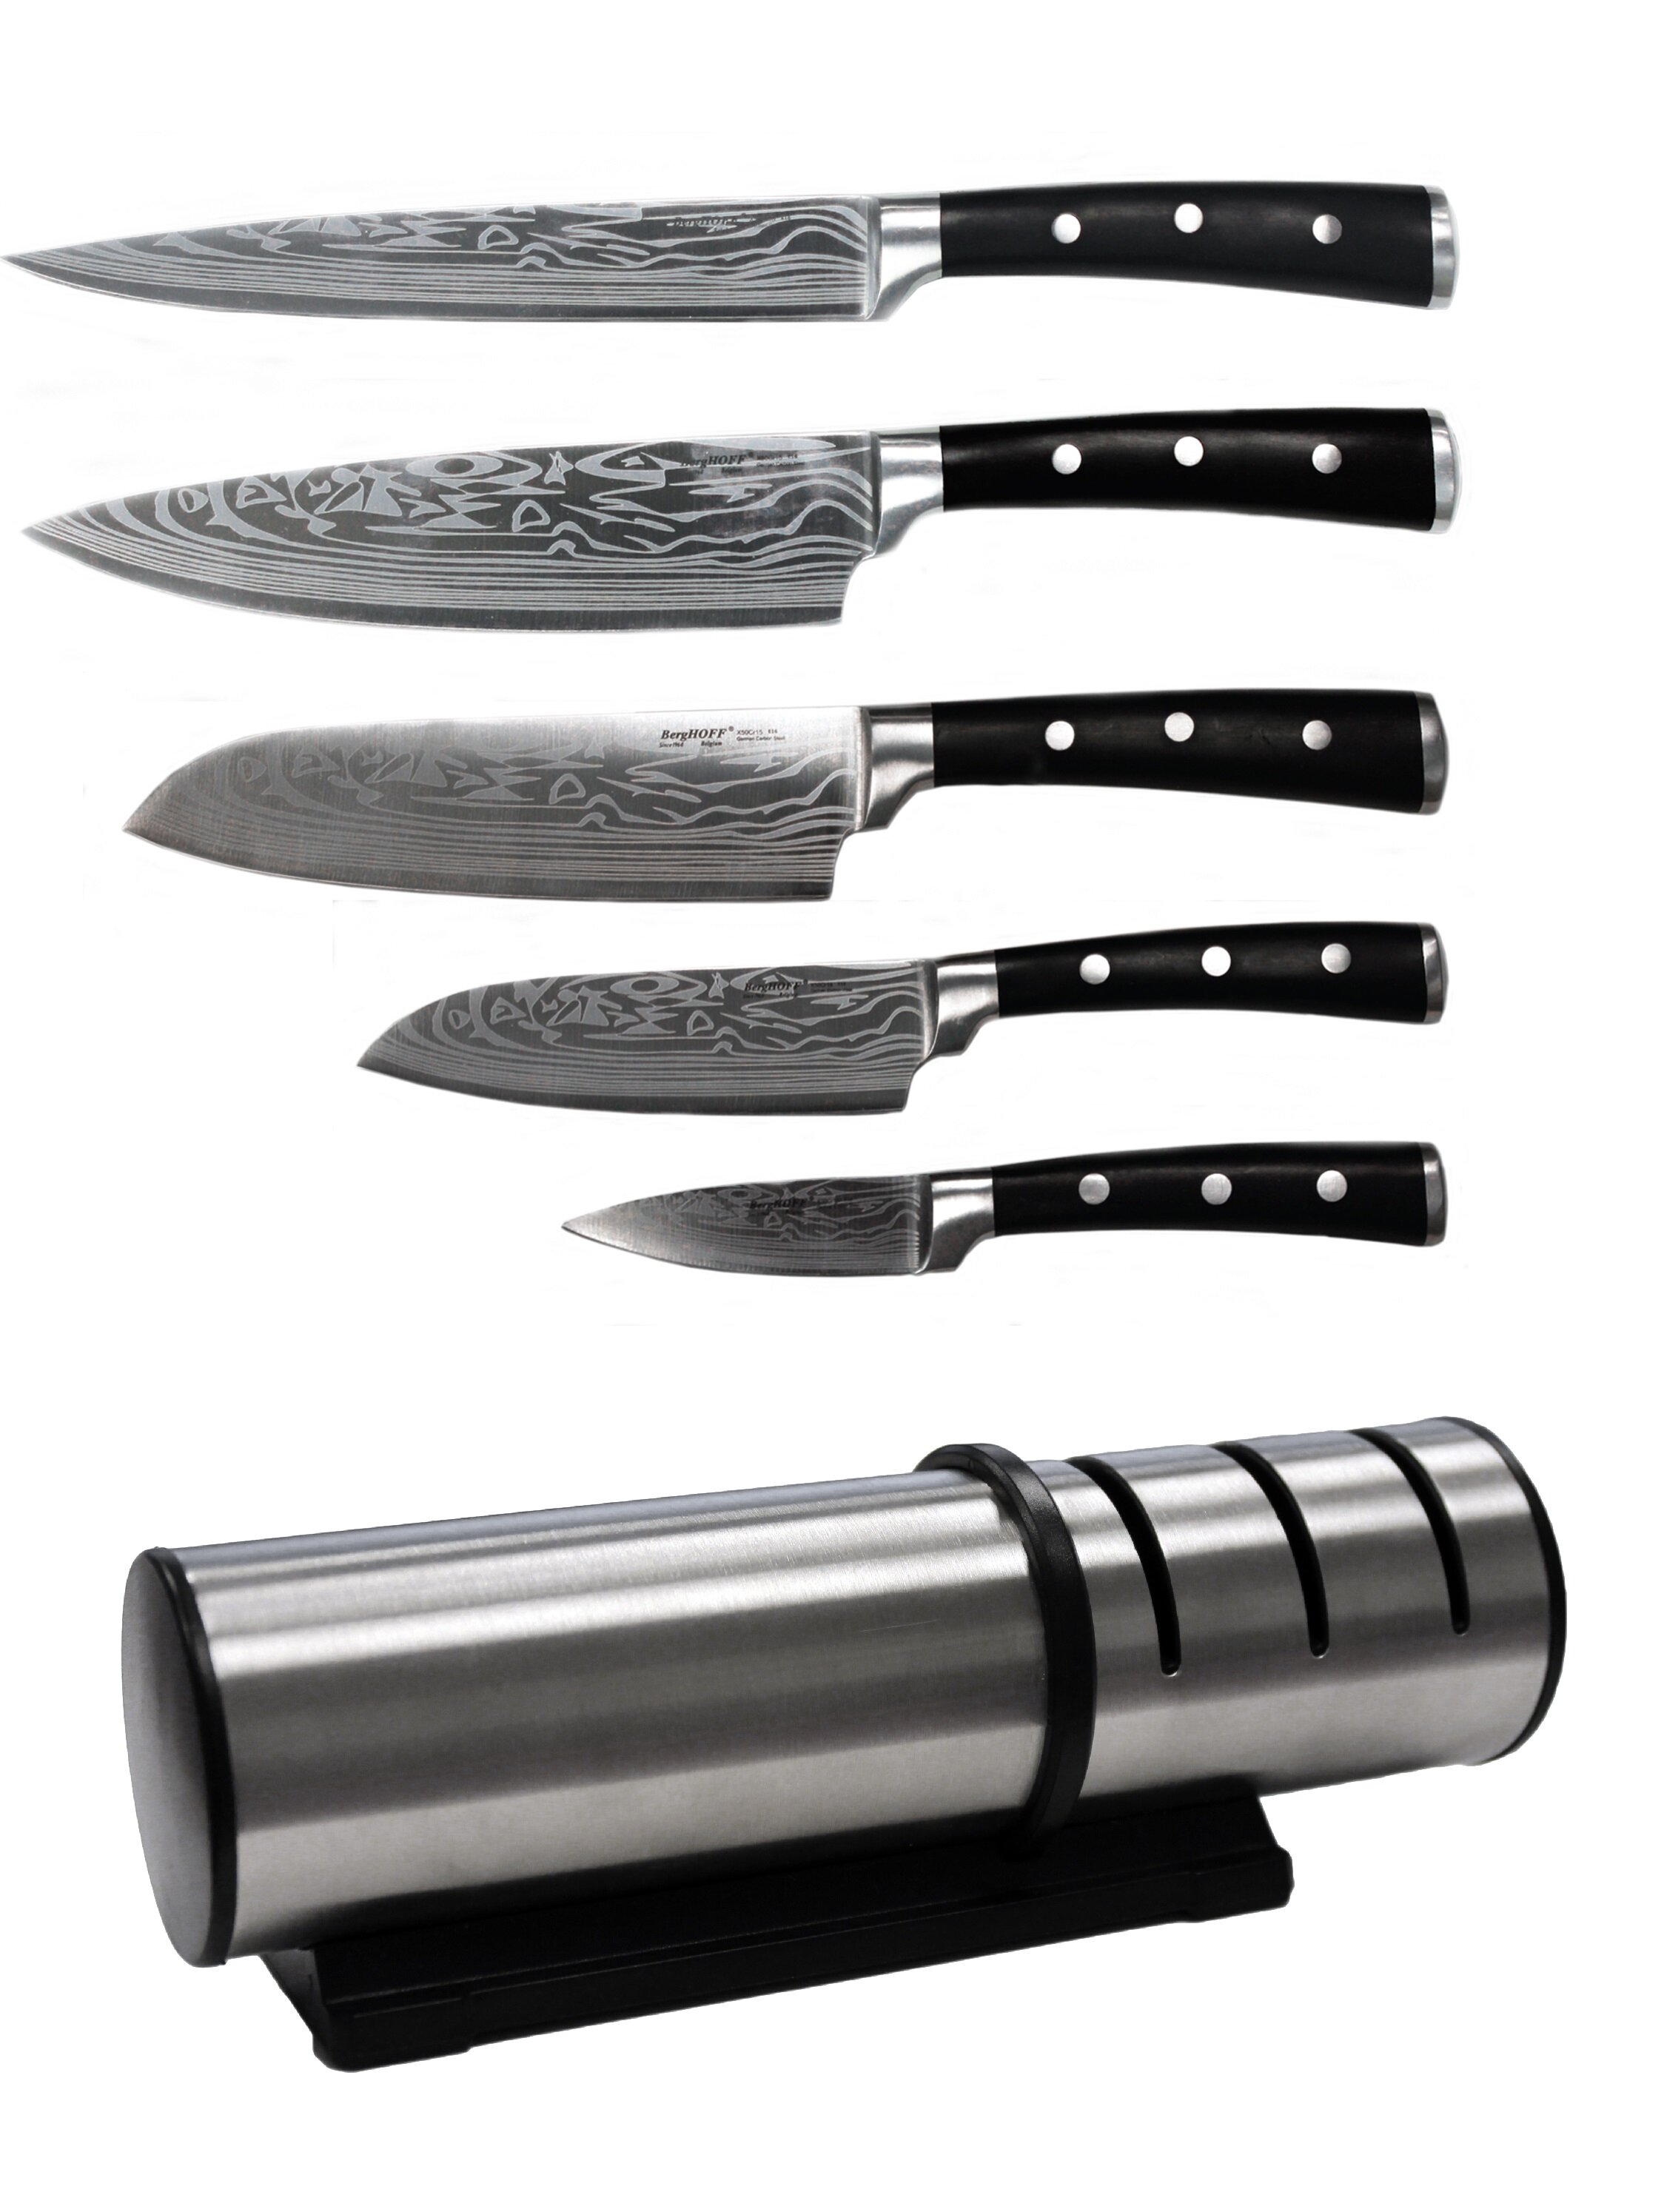 https://assets.wfcdn.com/im/28304699/compr-r85/8993/89939263/berghoff-international-antigua-6-piece-assorted-knife-set.jpg